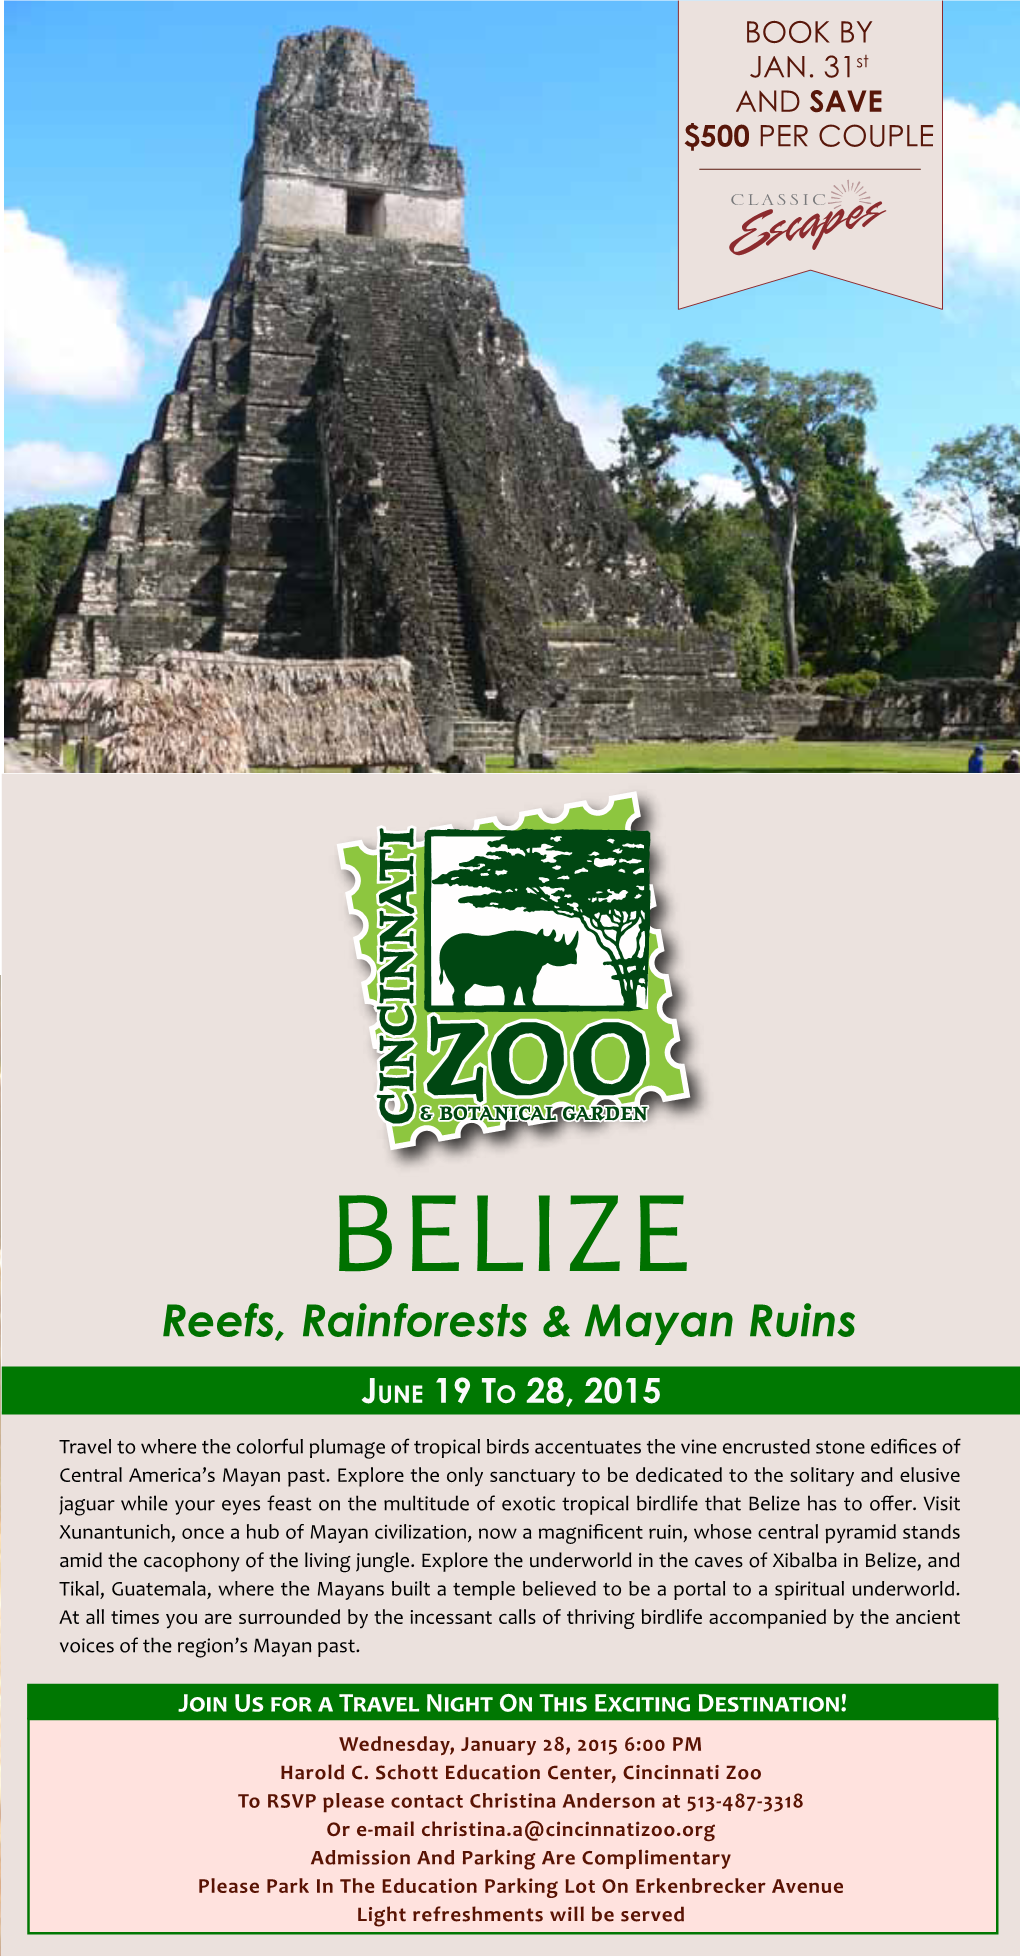 Belize Departing on June 19, 2015